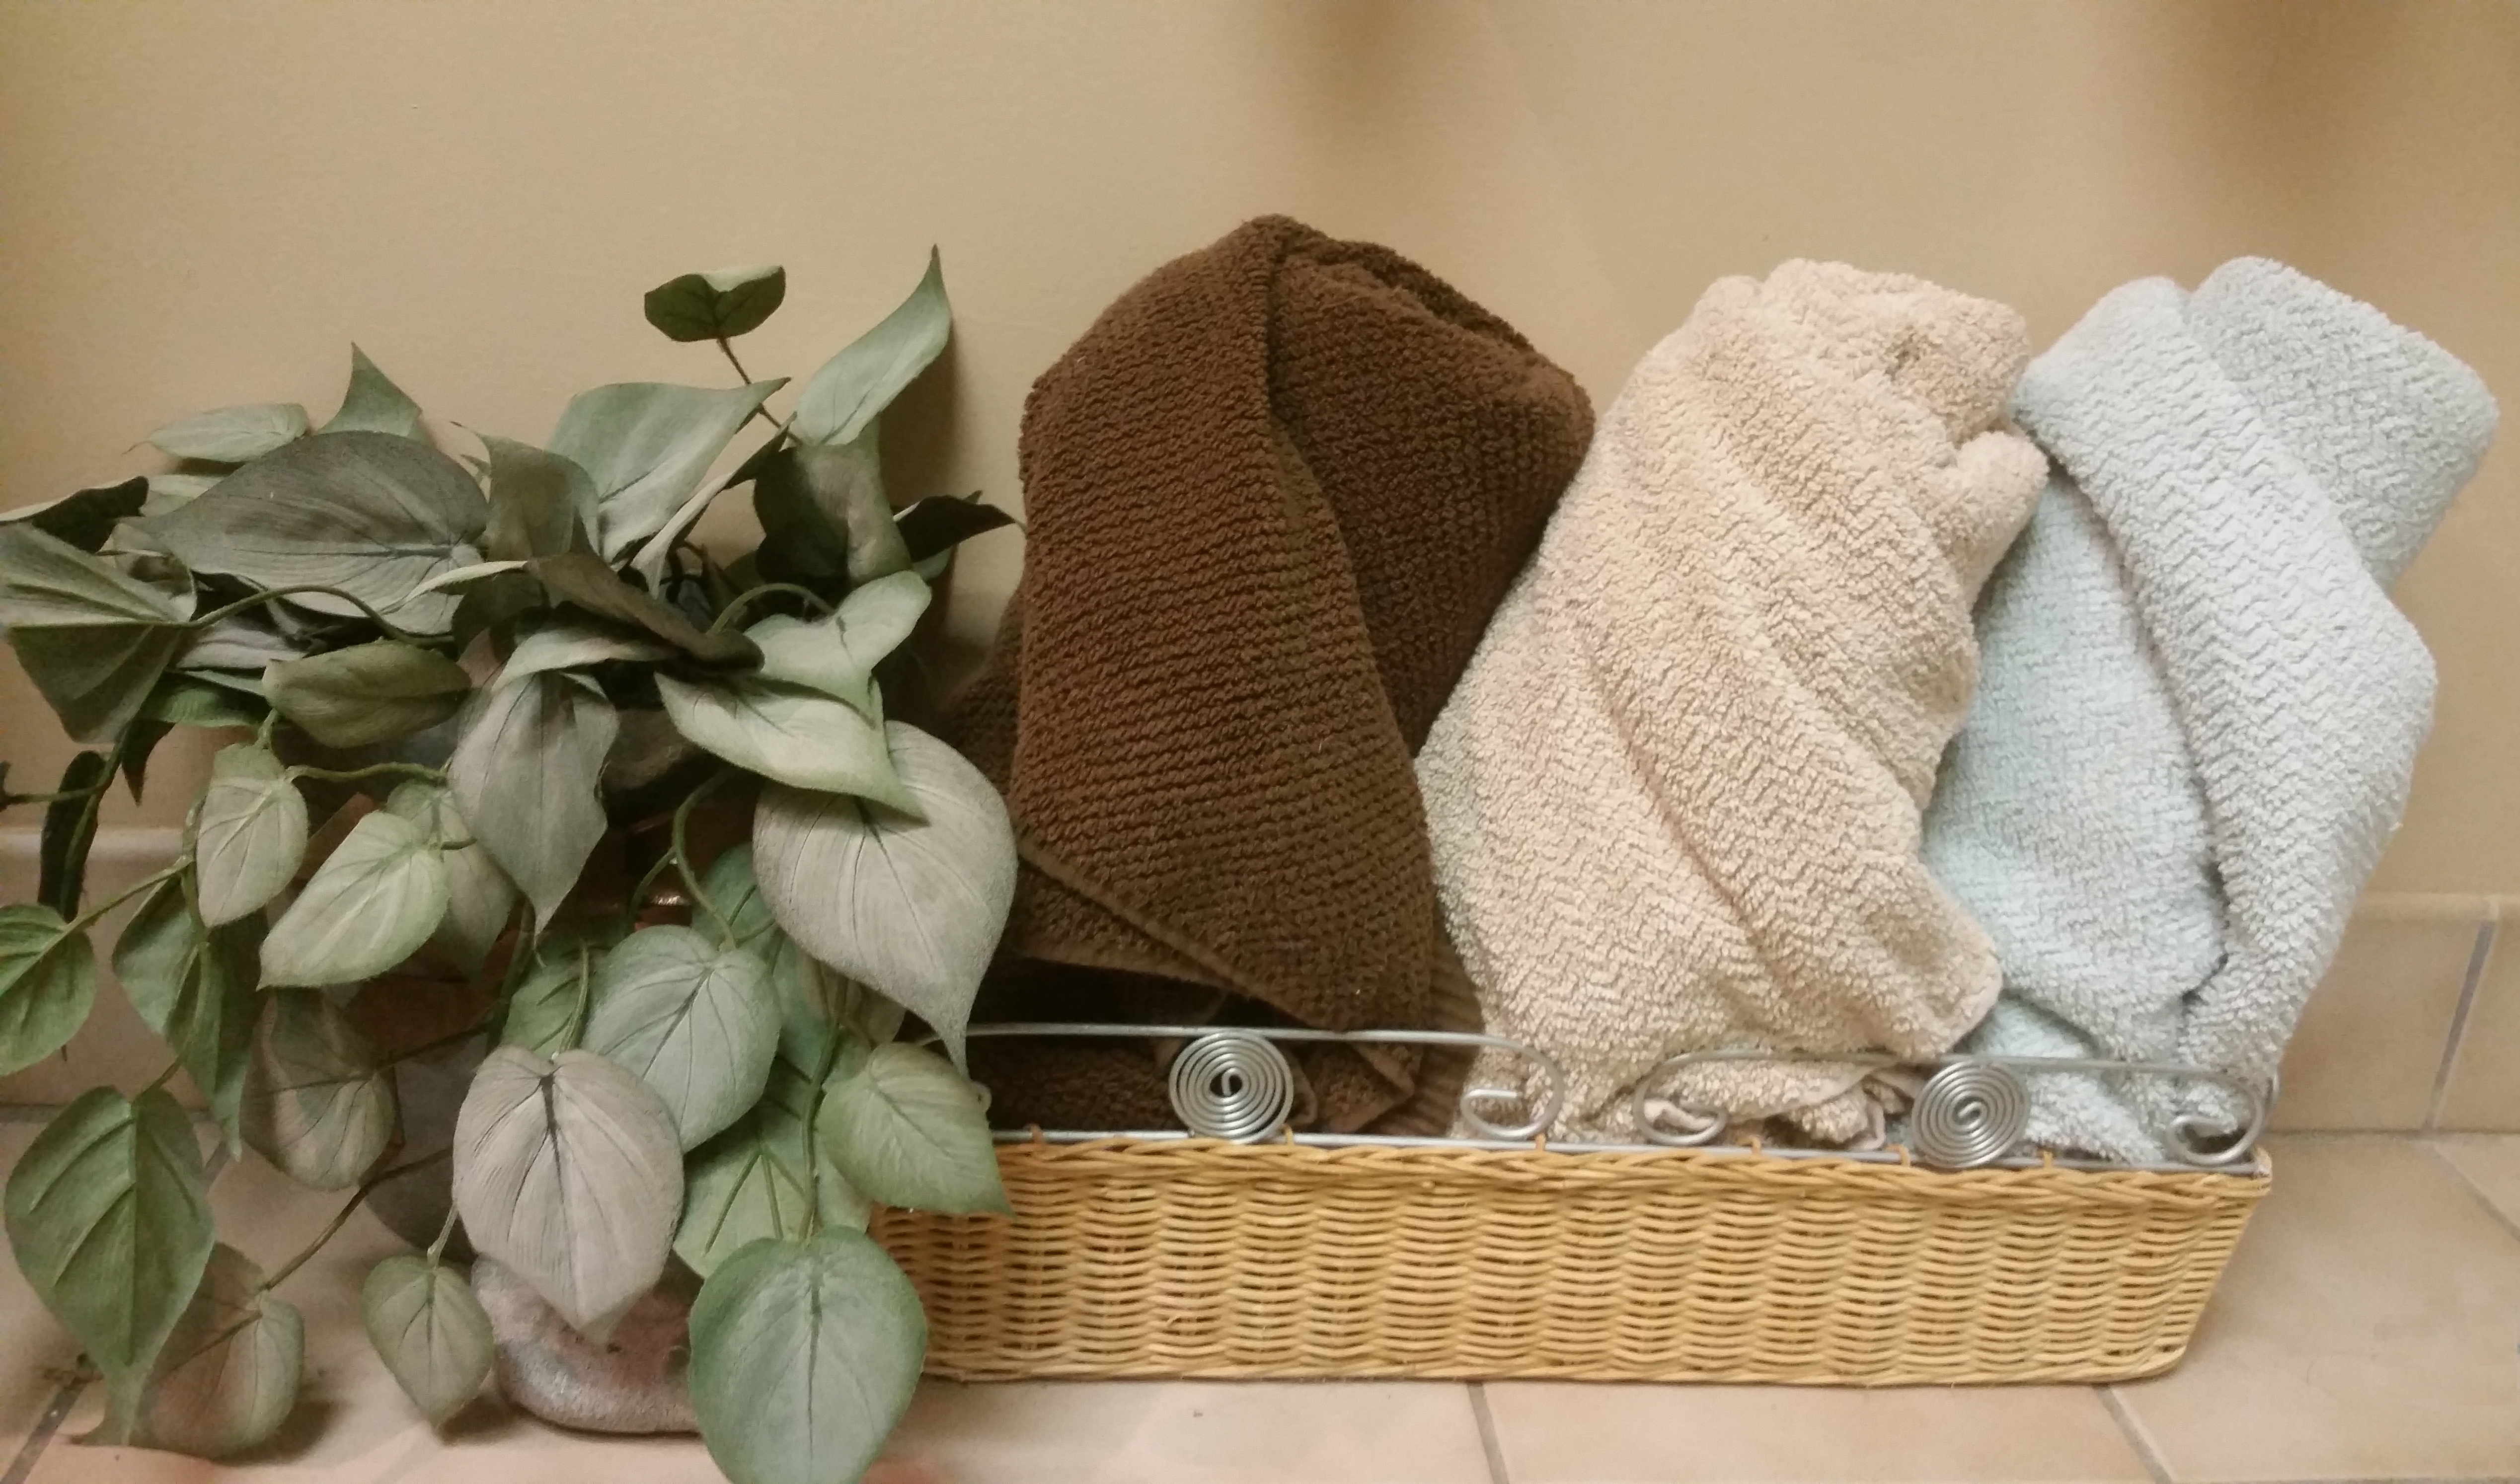 Towels Displayed in Basket